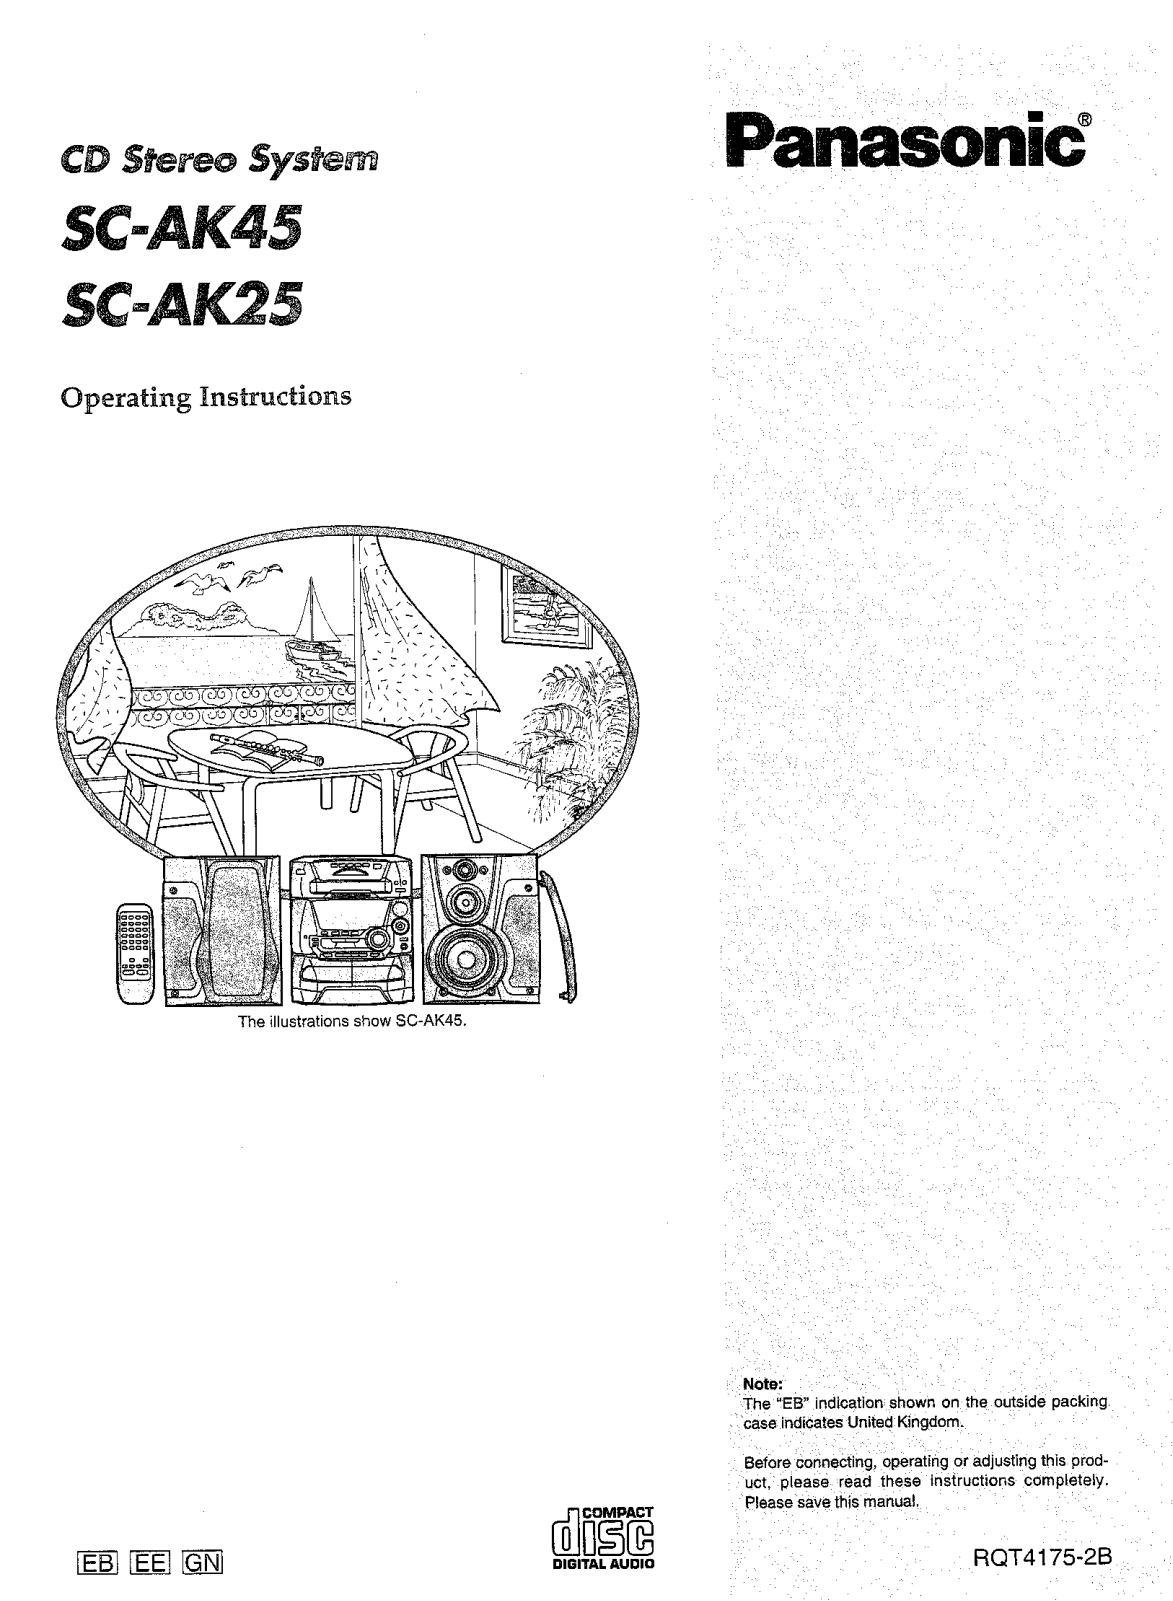 Panasonic SC-AK25, SC-AK45 Service Manual